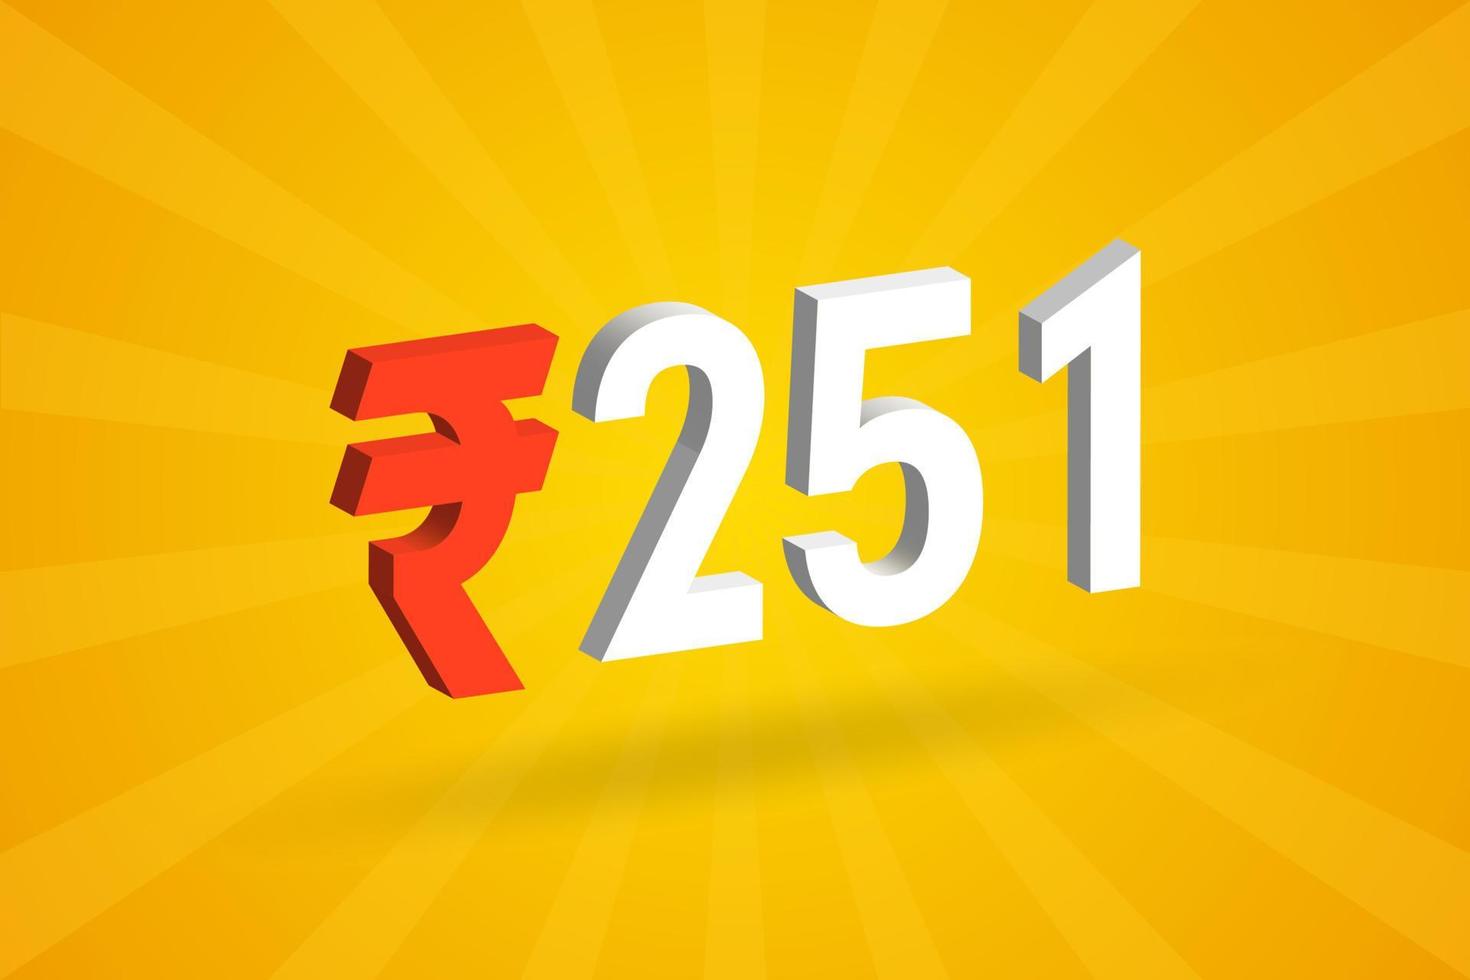 251 Rupie 3D-Symbol fettes Textvektorbild. 3d 251 indische Rupie Währungszeichen Vektor Illustration